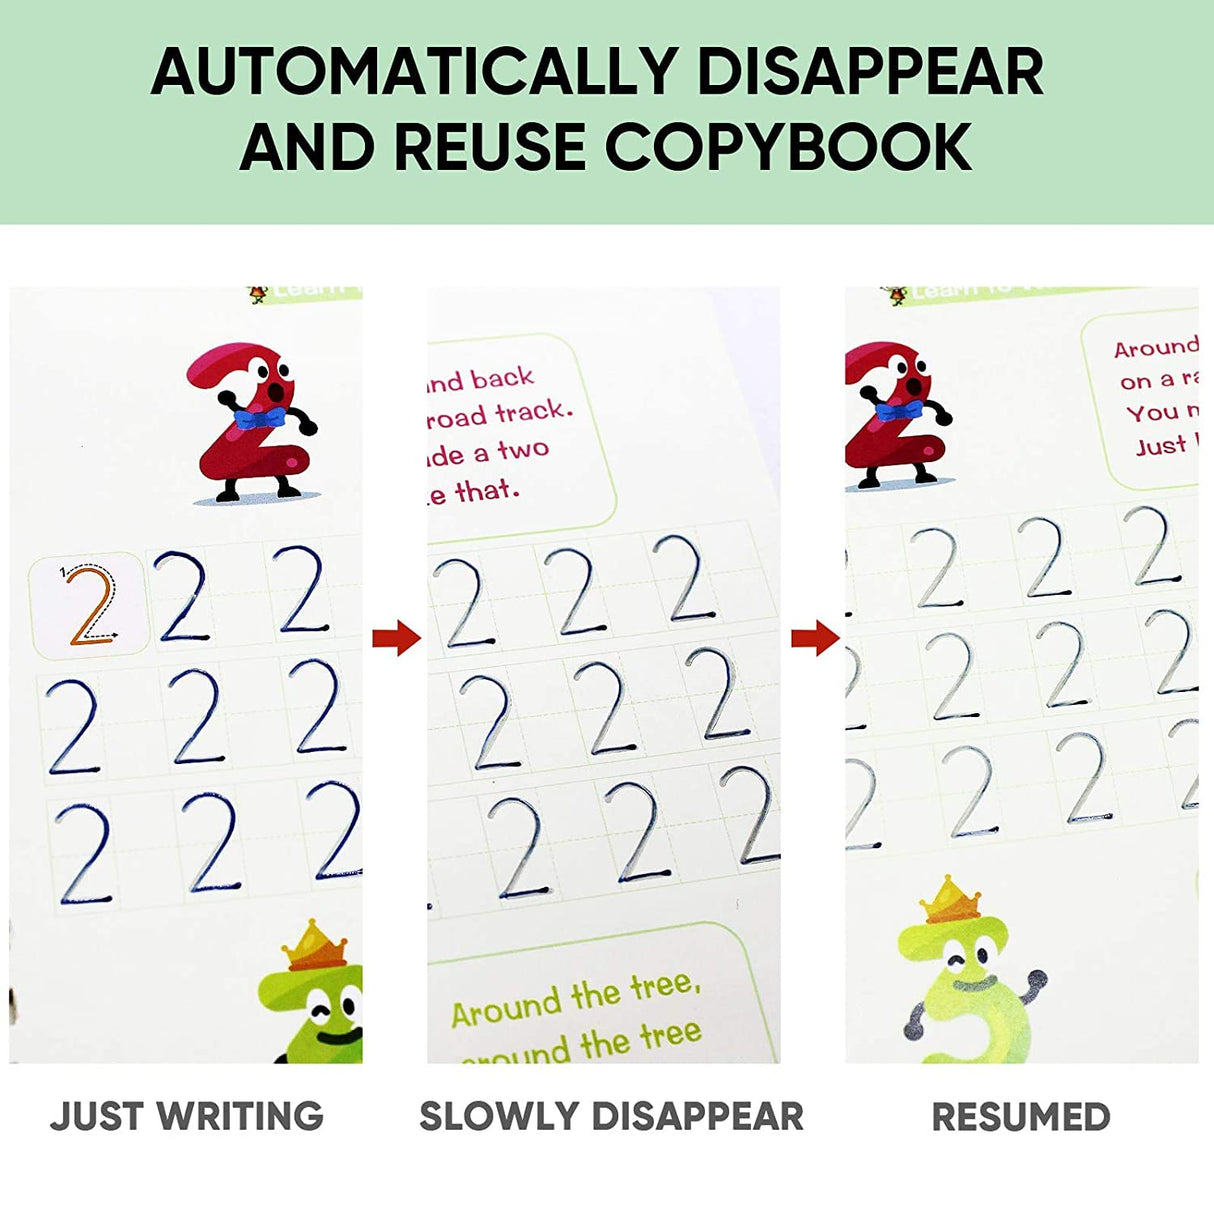 5 PCS Magic Copybook Children Reusable Practice Handwriting